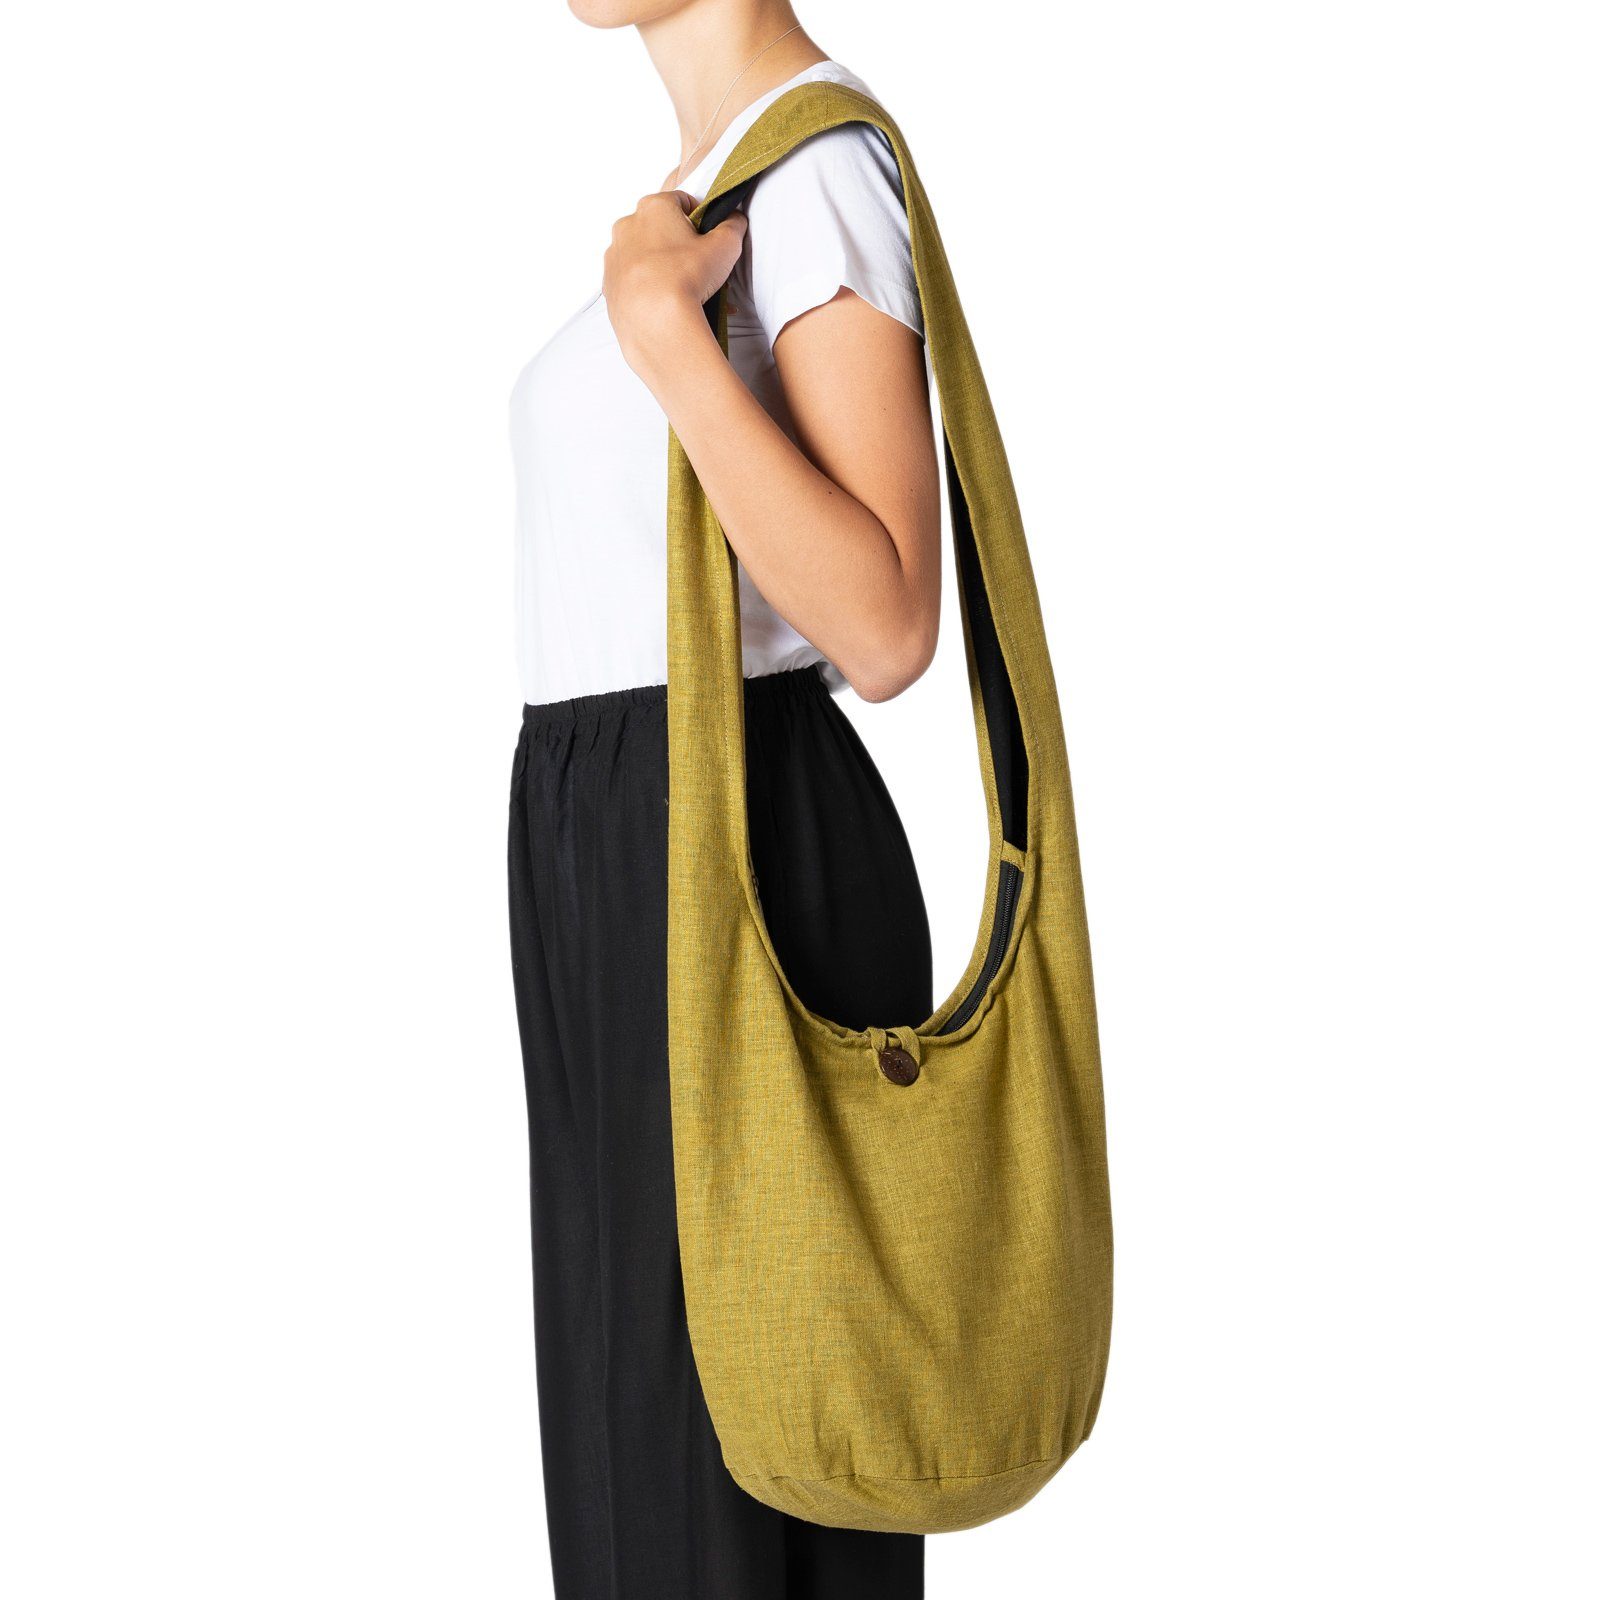 PANASIAM Yogatasche Schulterbeutel einfarbig Schultertasche aus Hanf in 2 Größen, Umhängetasche auch als Wickeltasche Handtasche oder Strandtasche olivengrün